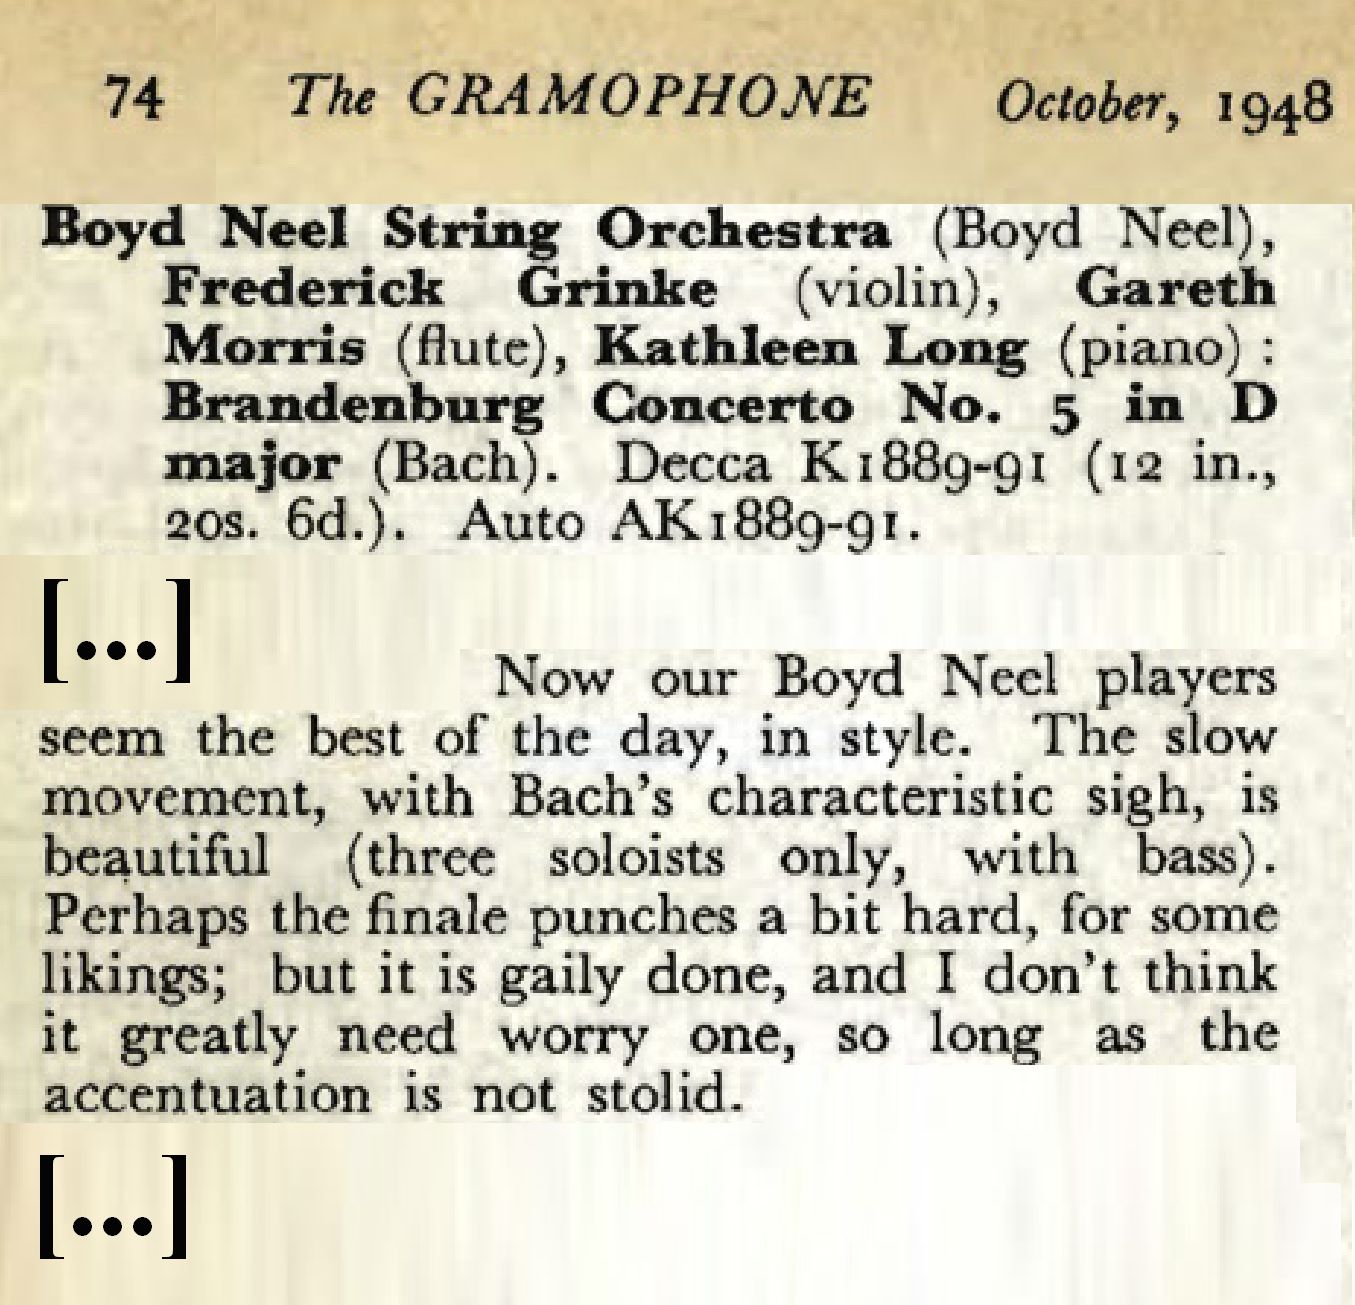 Extrait du compte-rendu paru dans la revue The GRAMOPHONE d'octobre 1948 en page 74